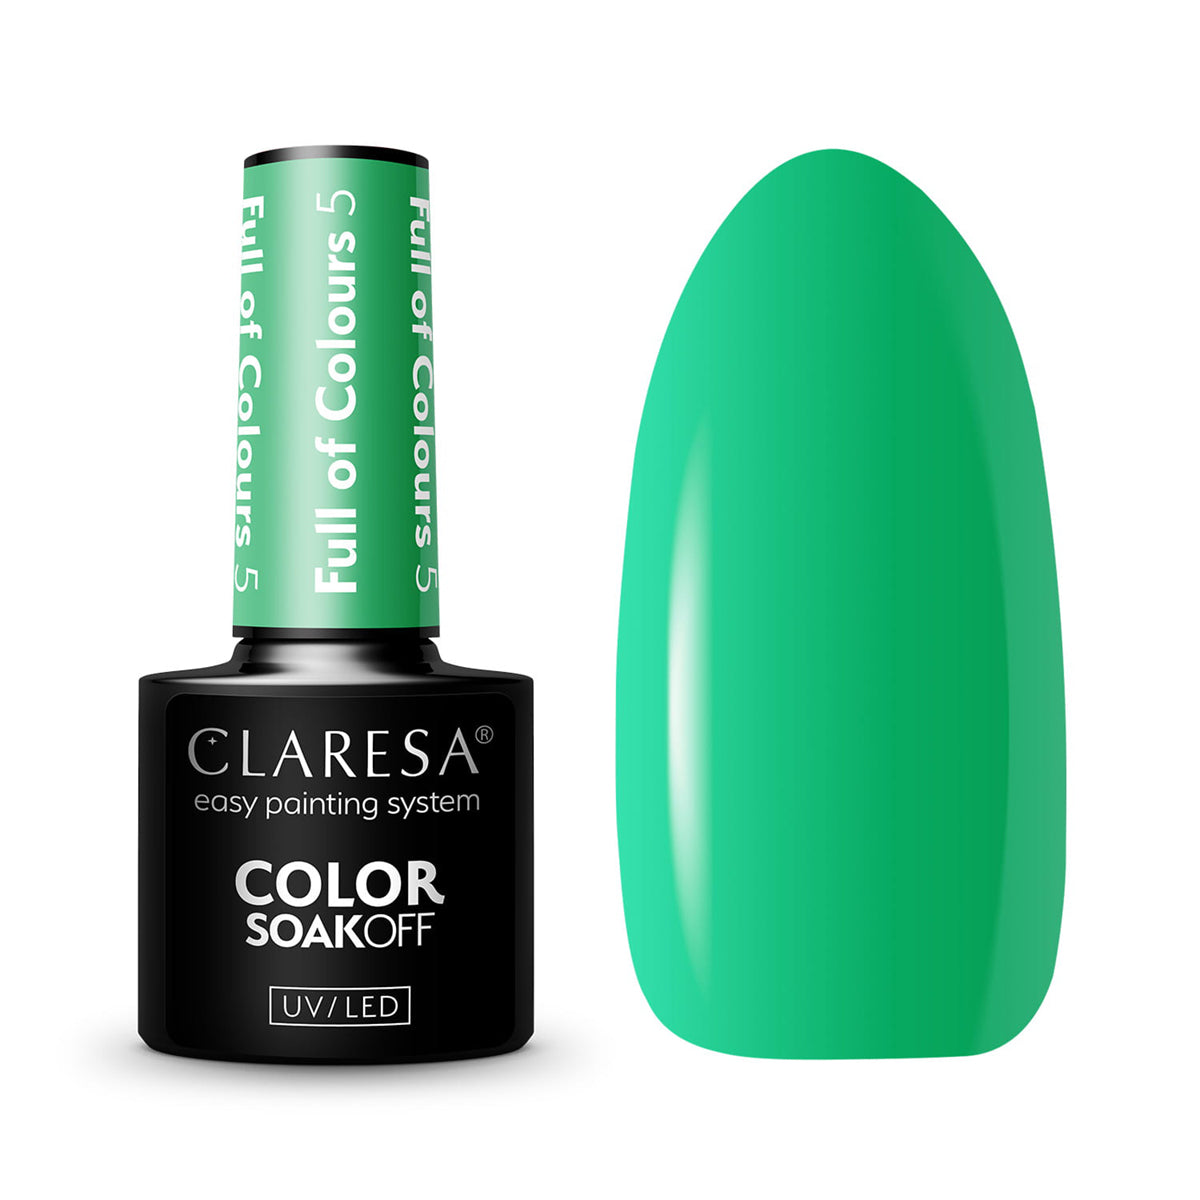 CLARESA Full of colours Hybride nagellak 5 -5g